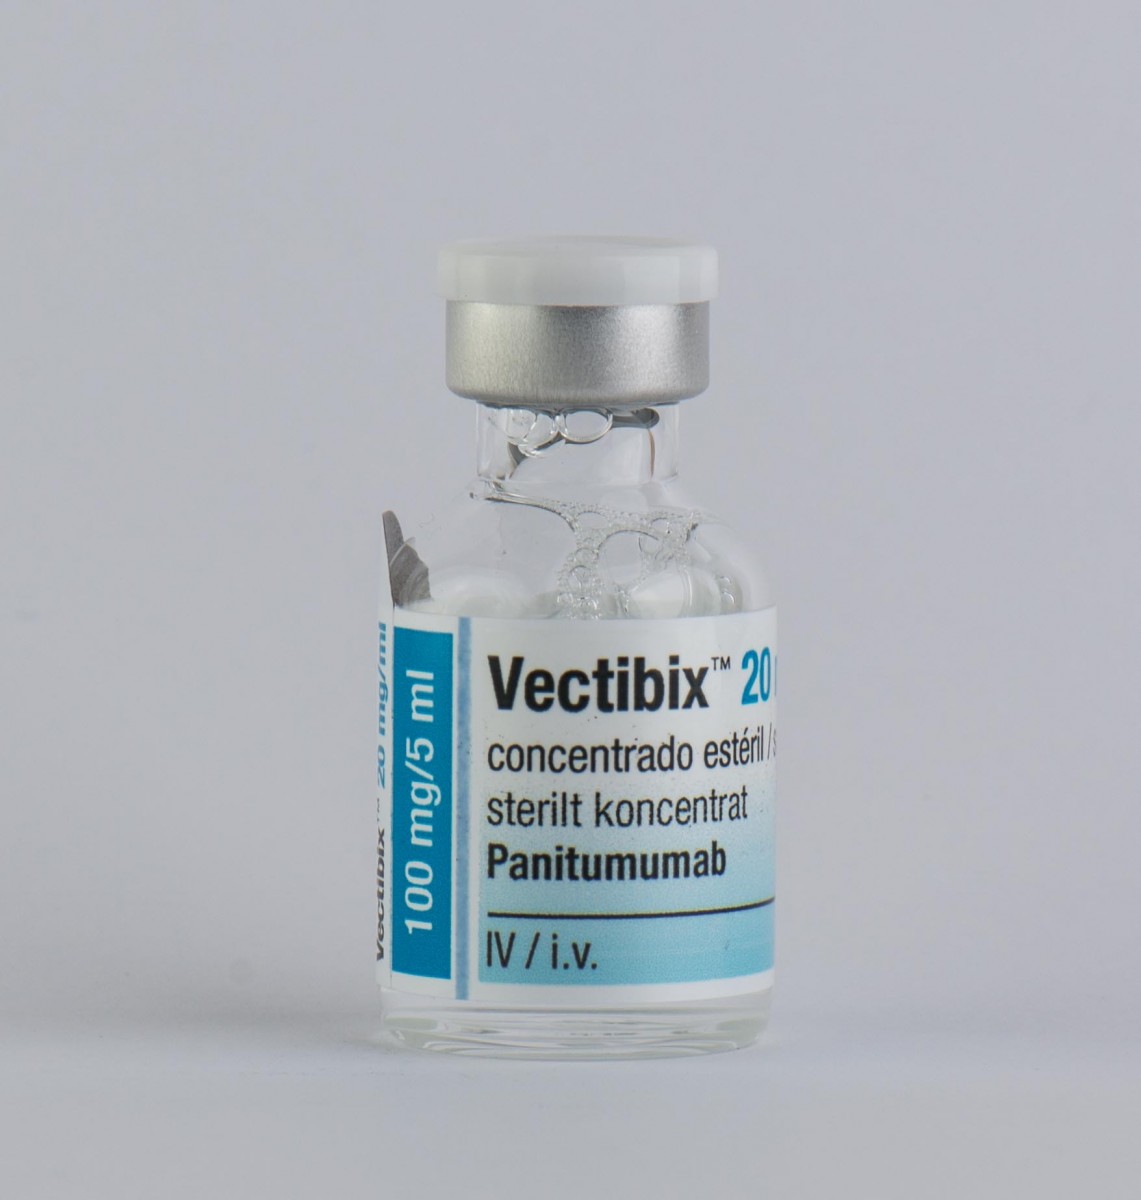 VECTIBIX 20 MG/ML CONCENTRADO PARA SOLUCION PARA PERFUSION, 1 vial de 5 ml fotografía de la forma farmacéutica.